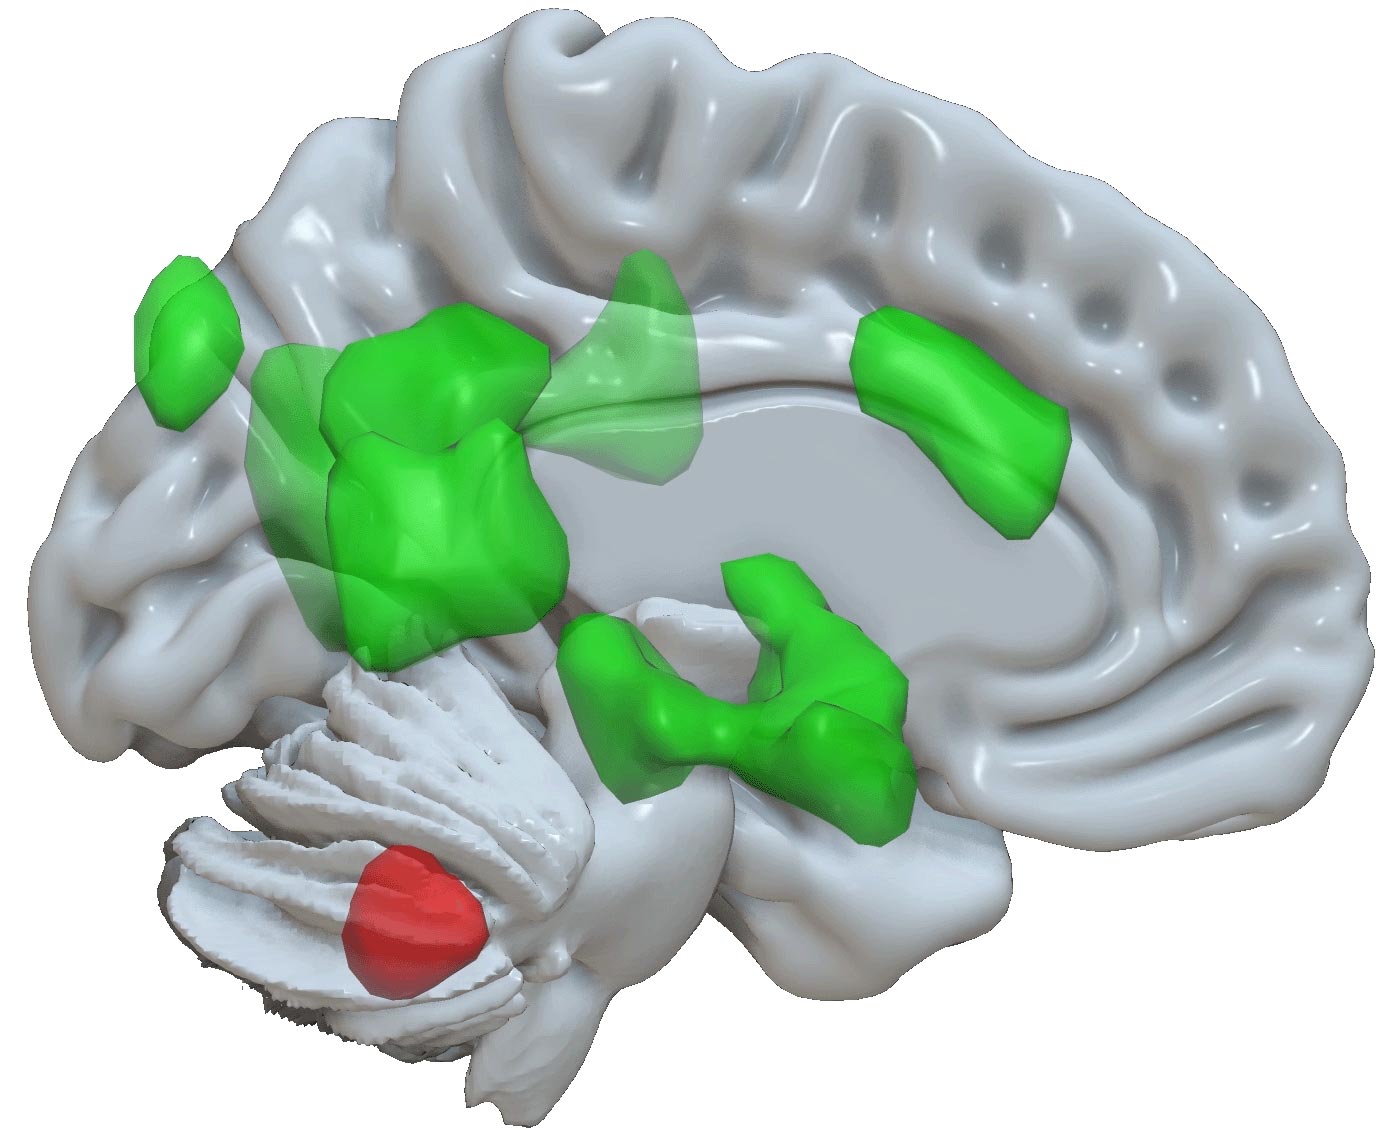 Ahli saraf menemukan fungsi baru otak kecil: memori emosional